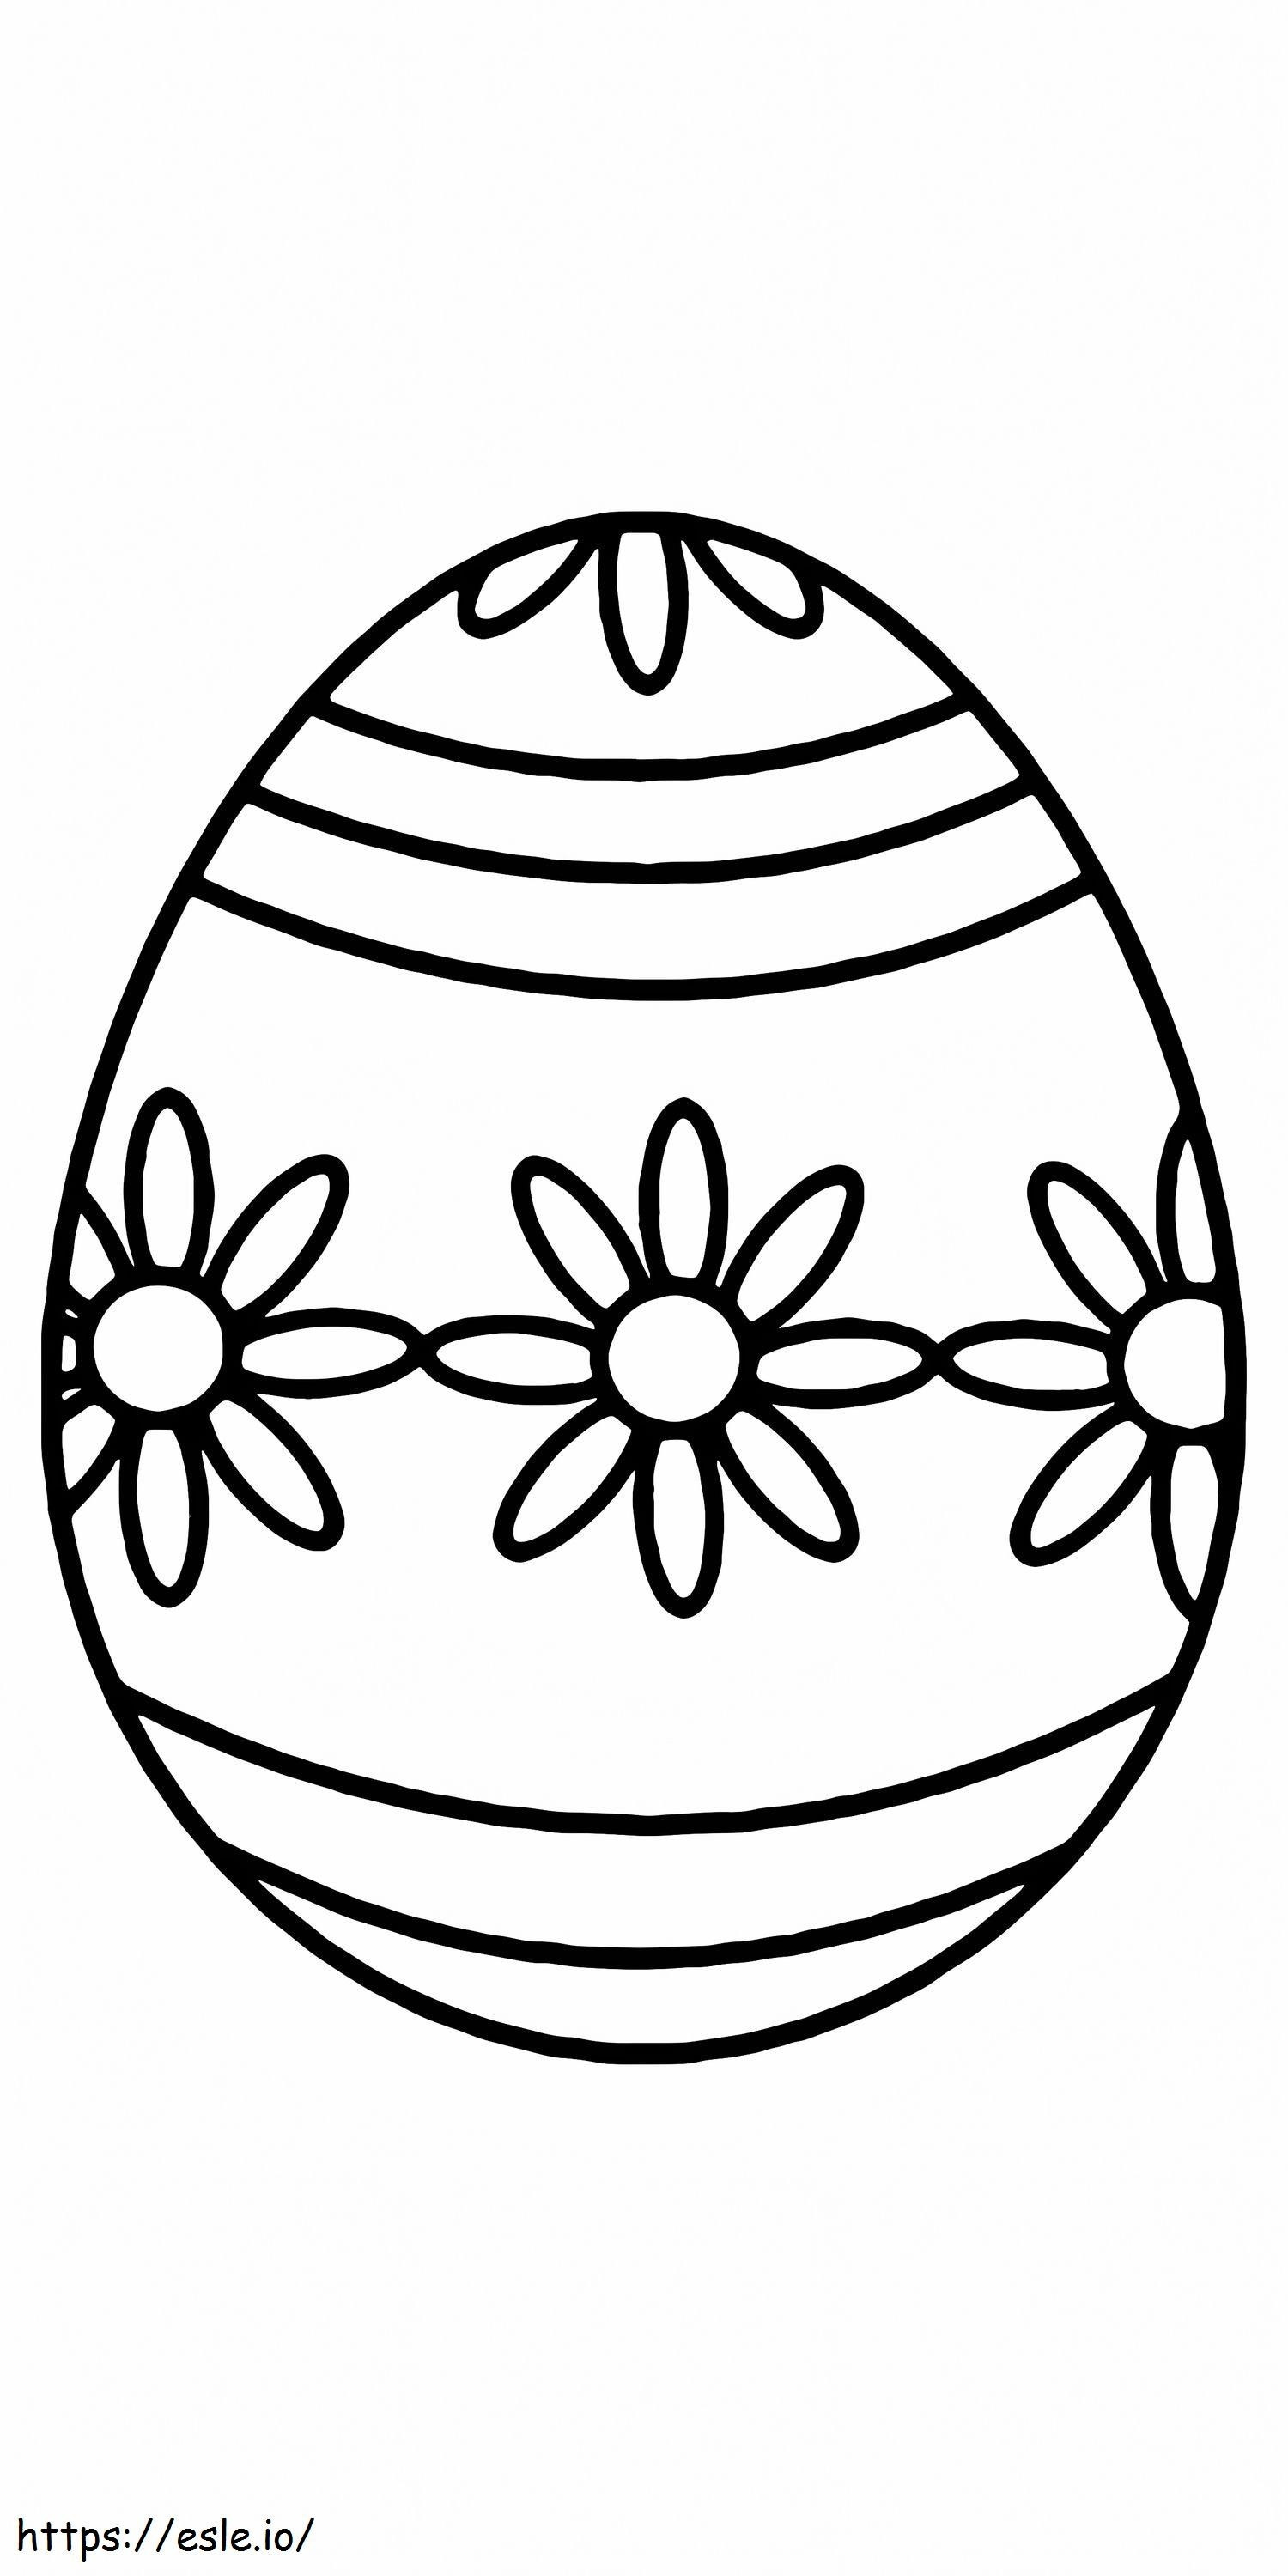 Osterei-Blumenmuster zum Ausdrucken 16 ausmalbilder